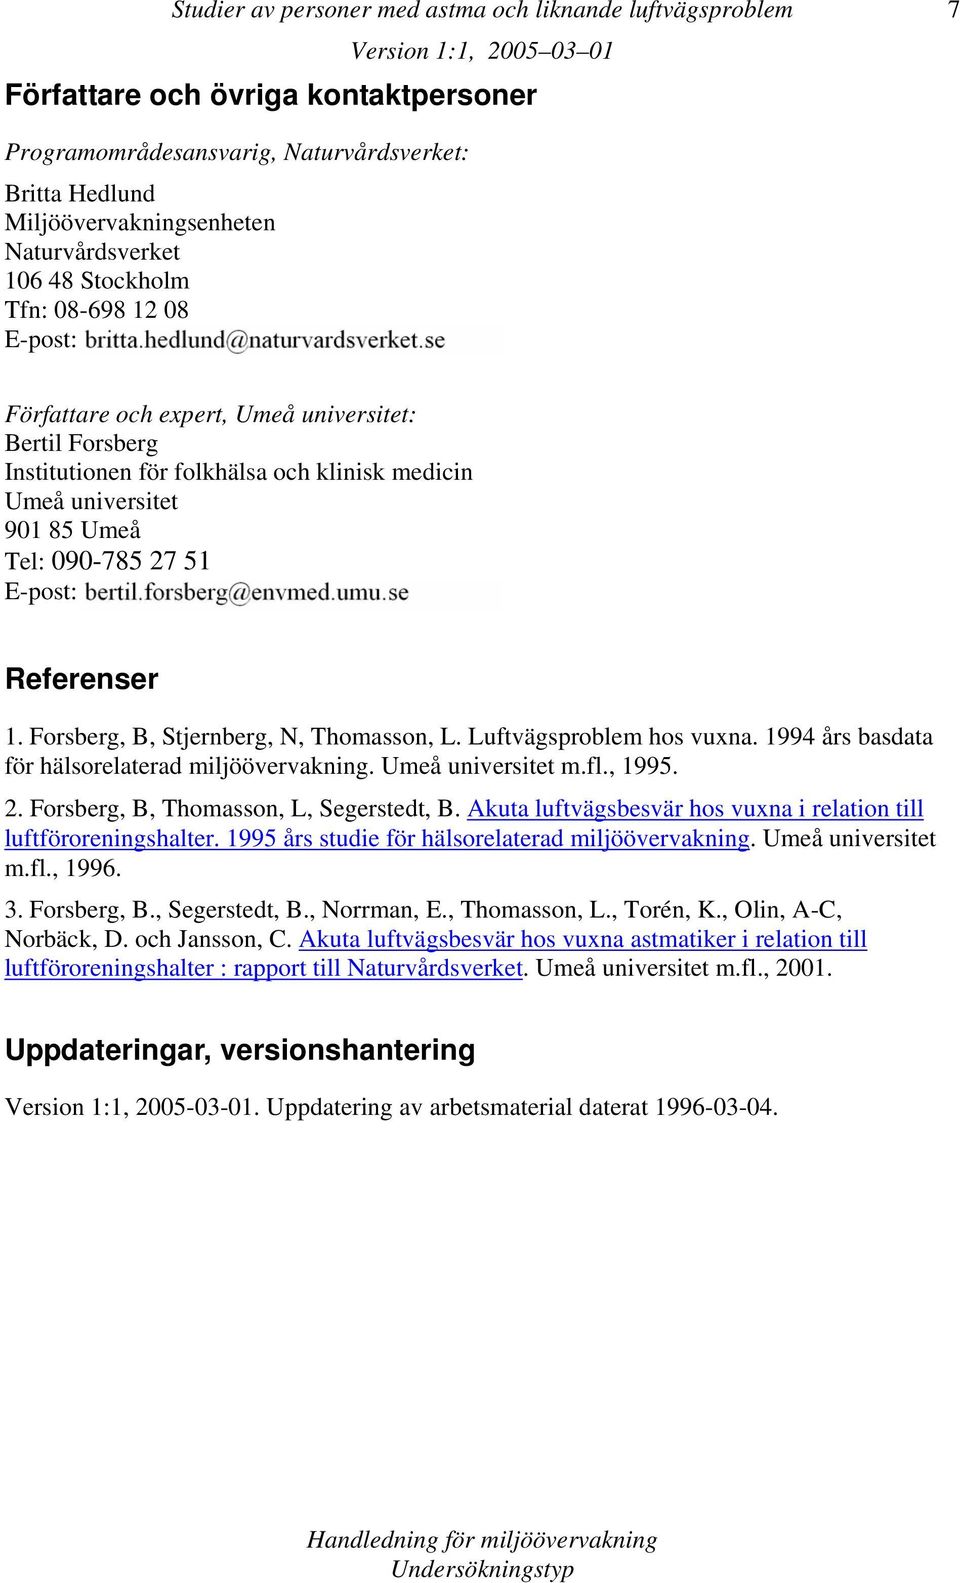 E-post: Referenser 1. Forsberg, B, Stjernberg, N, Thomasson, L. Luftvägsproblem hos vuxna. 1994 års basdata för hälsorelaterad miljöövervakning. Umeå universitet m.fl., 1995. 2.